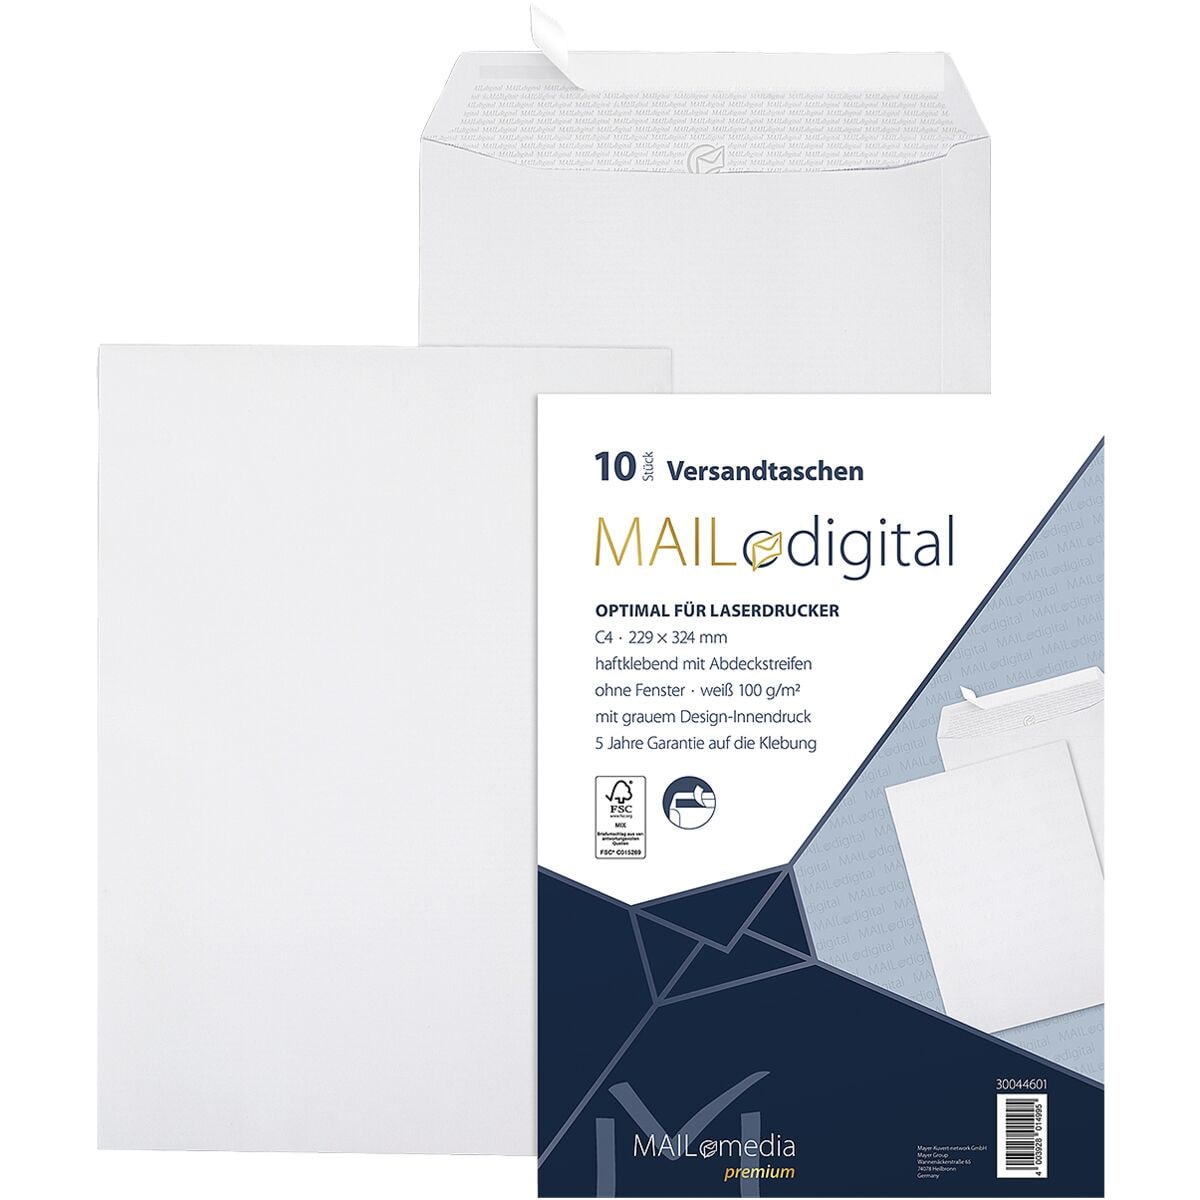 Mailmedia 10 Laserbedruckbare Versandtaschen Maildigital, C4 ohne Fenster